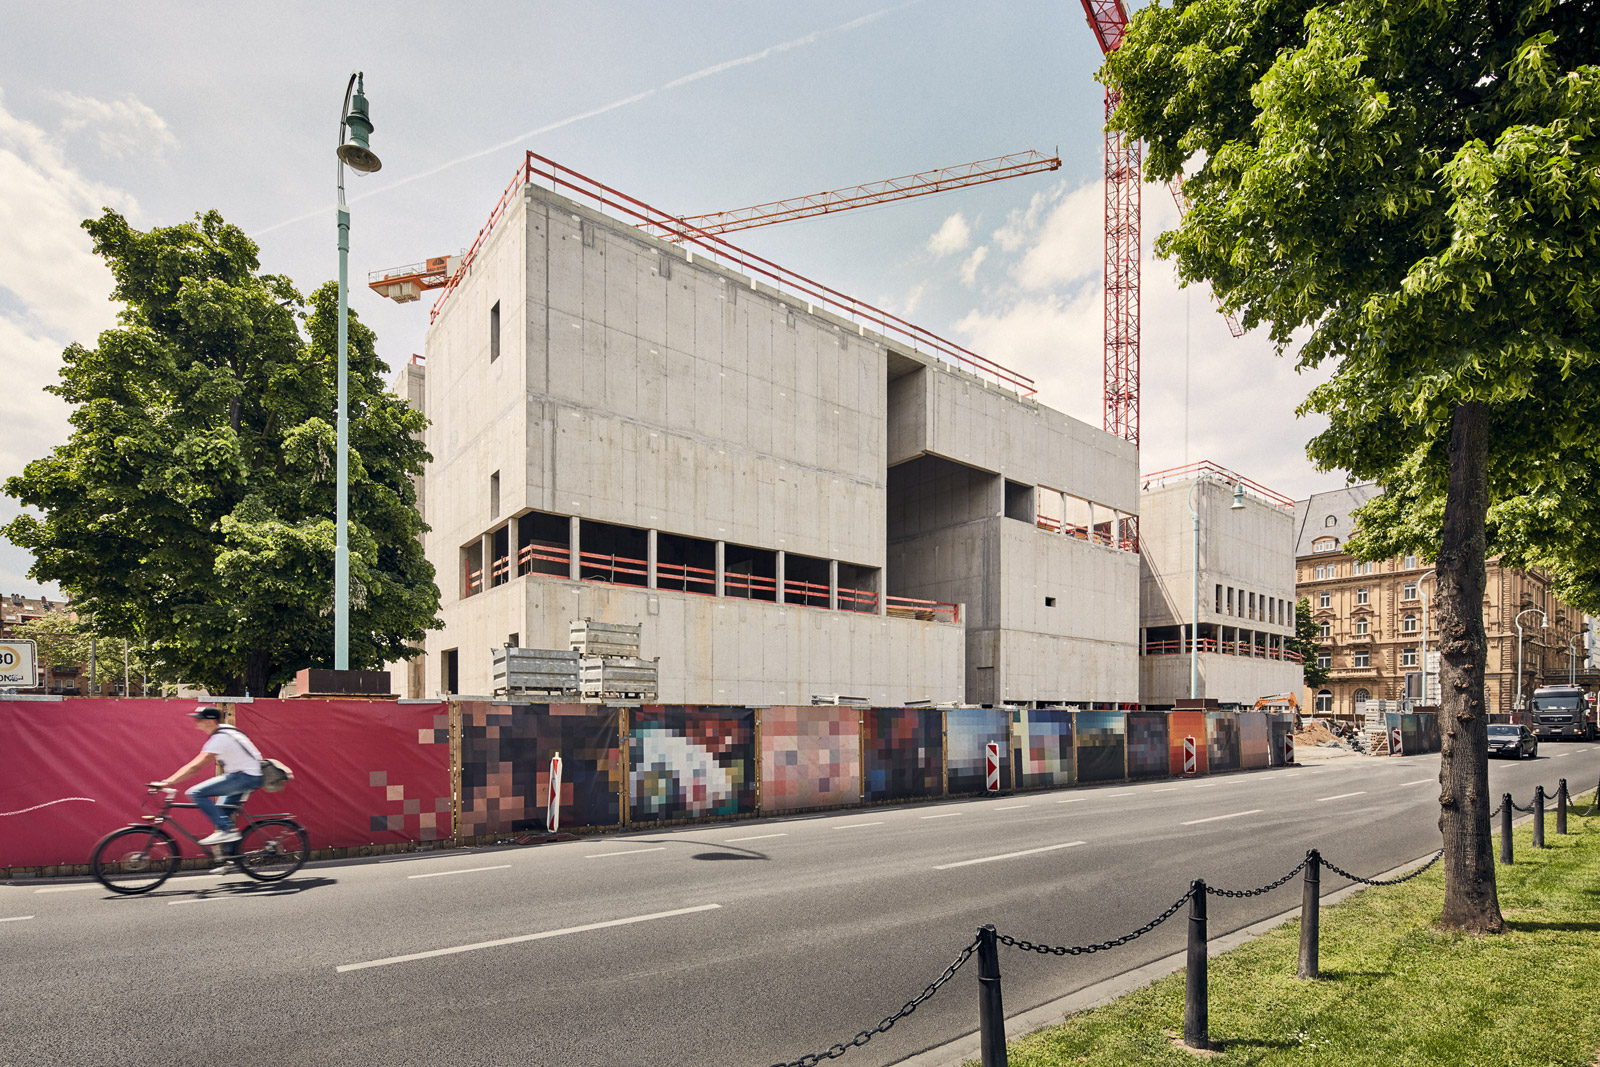  Vorderseite, Friedrichsplatz  2016–05–20        